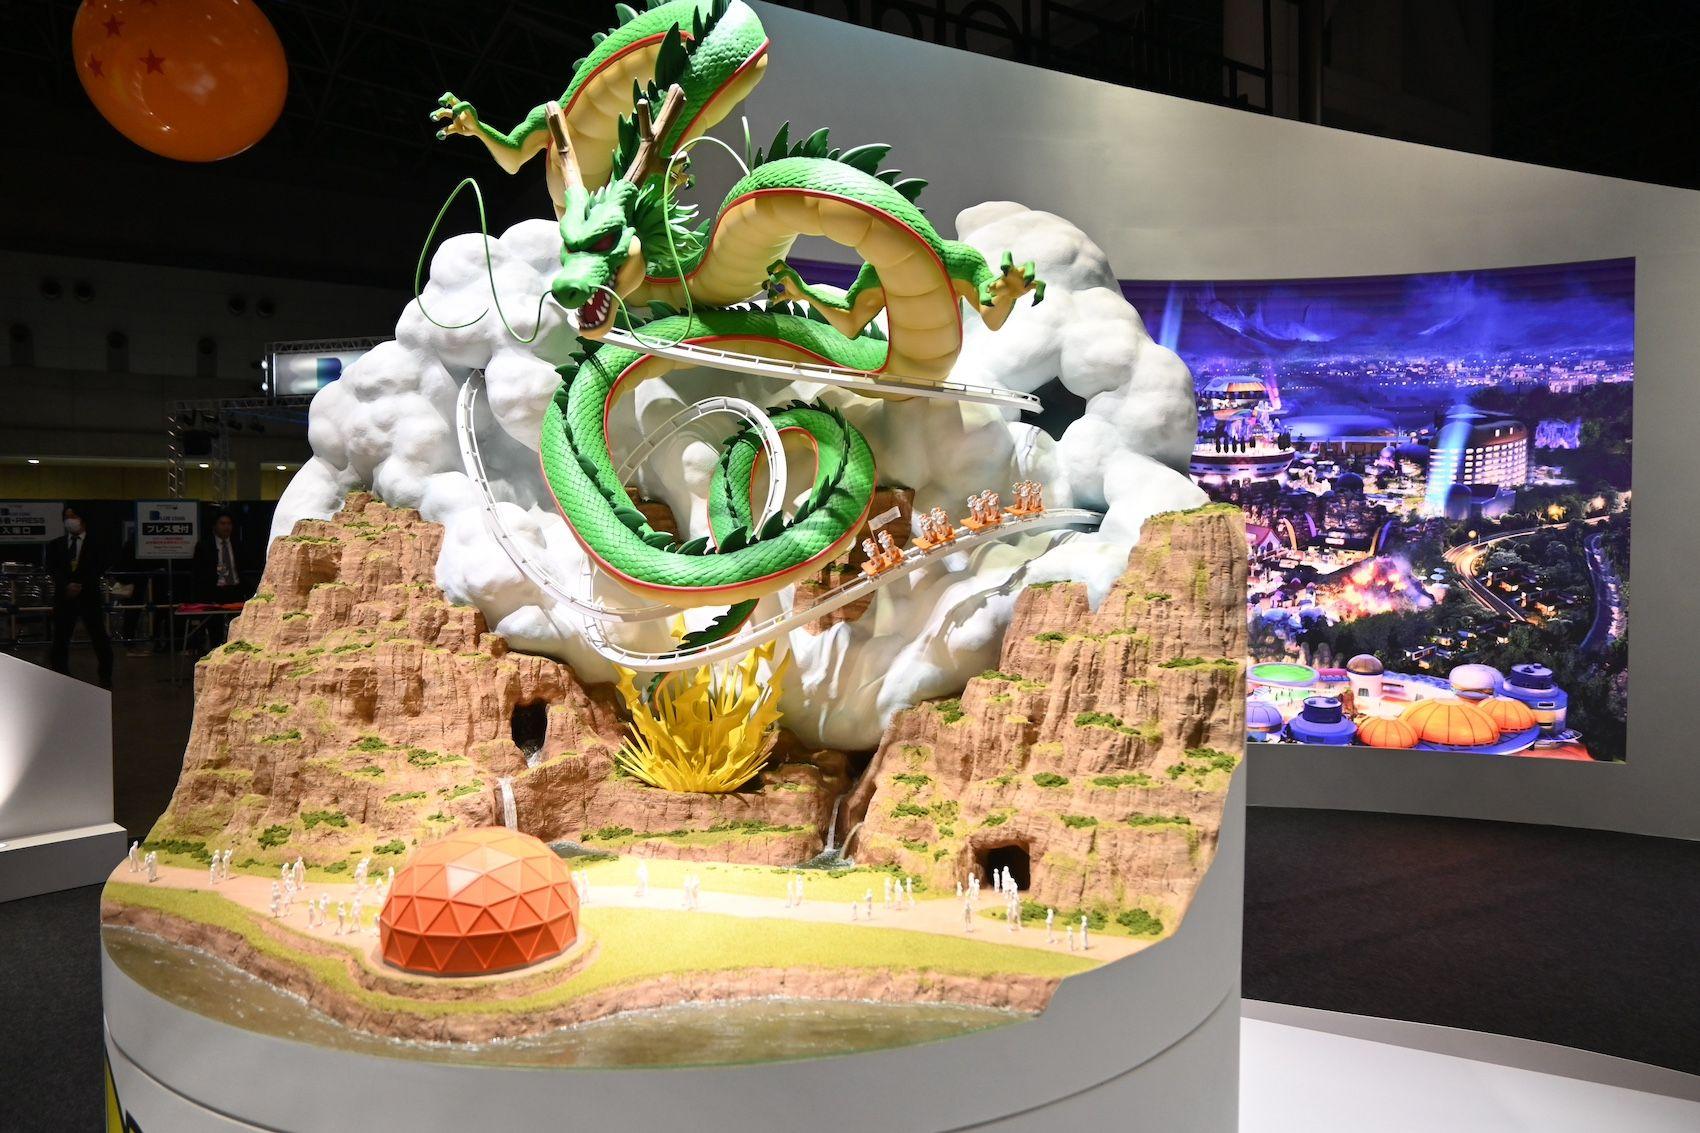 『ドラゴンボール』テーマパークのイメージ映像と模型